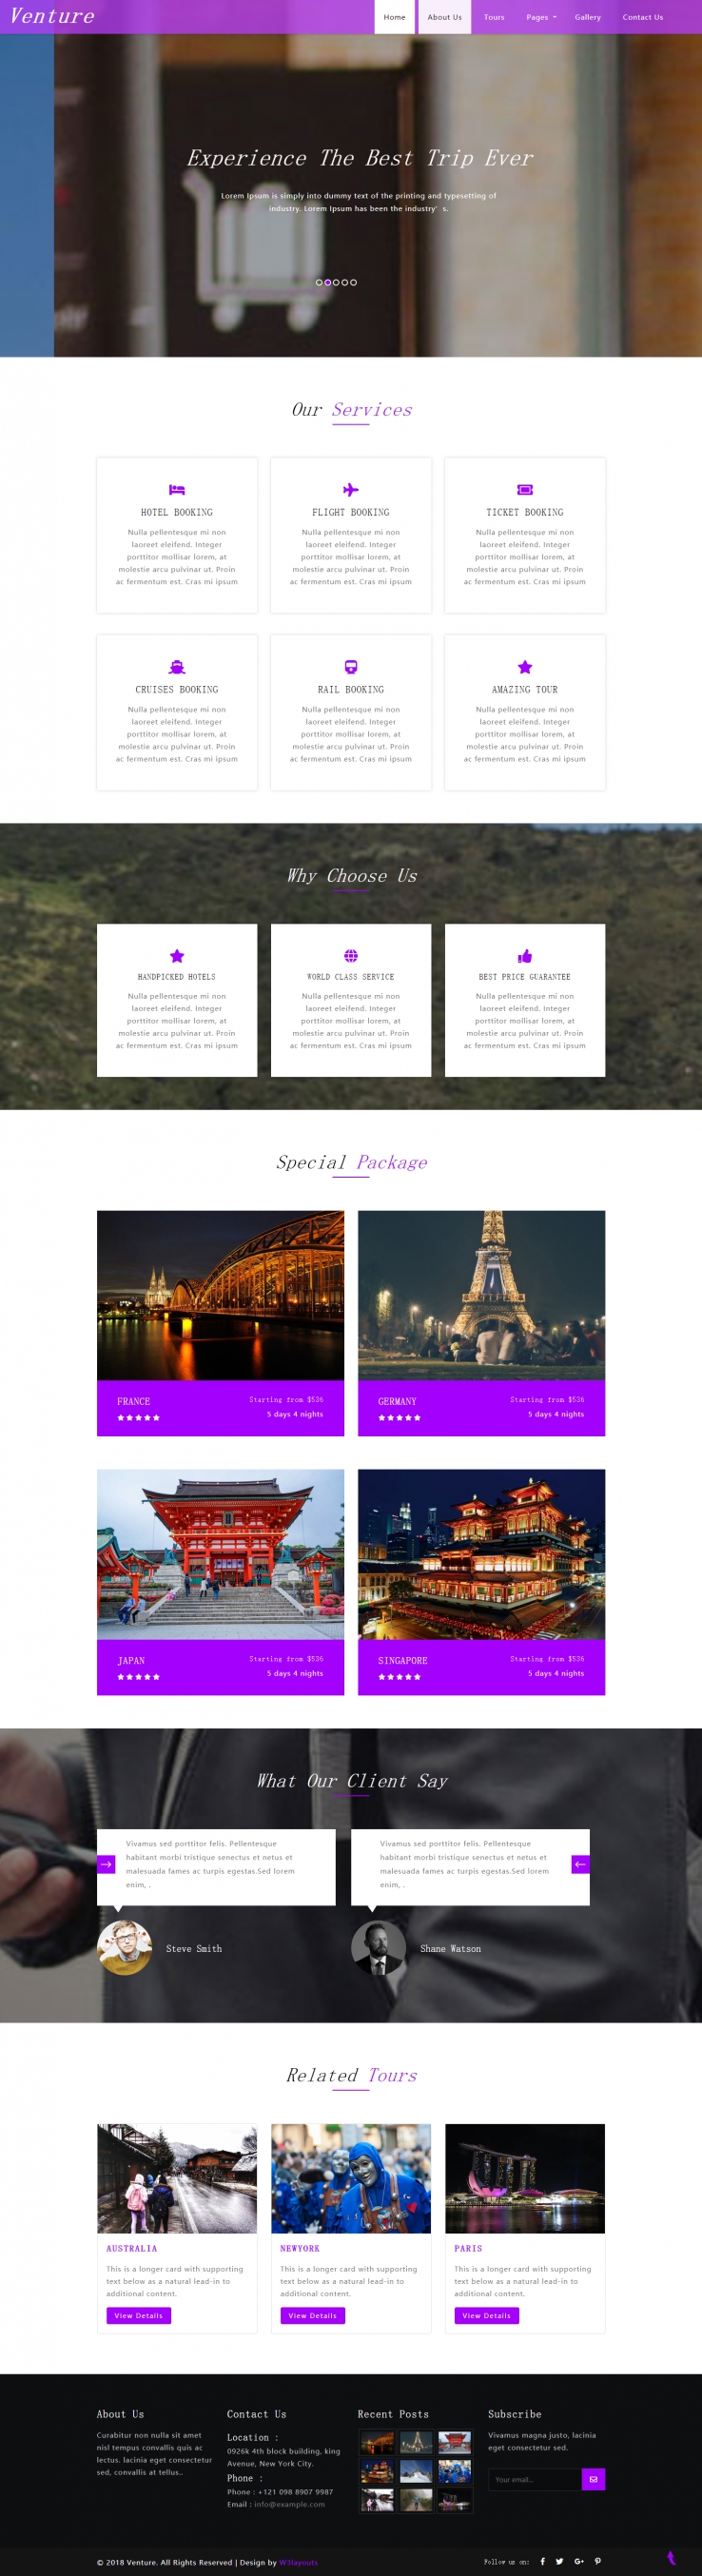 紫色简洁风格的旅程定制服务整站网站源码下载